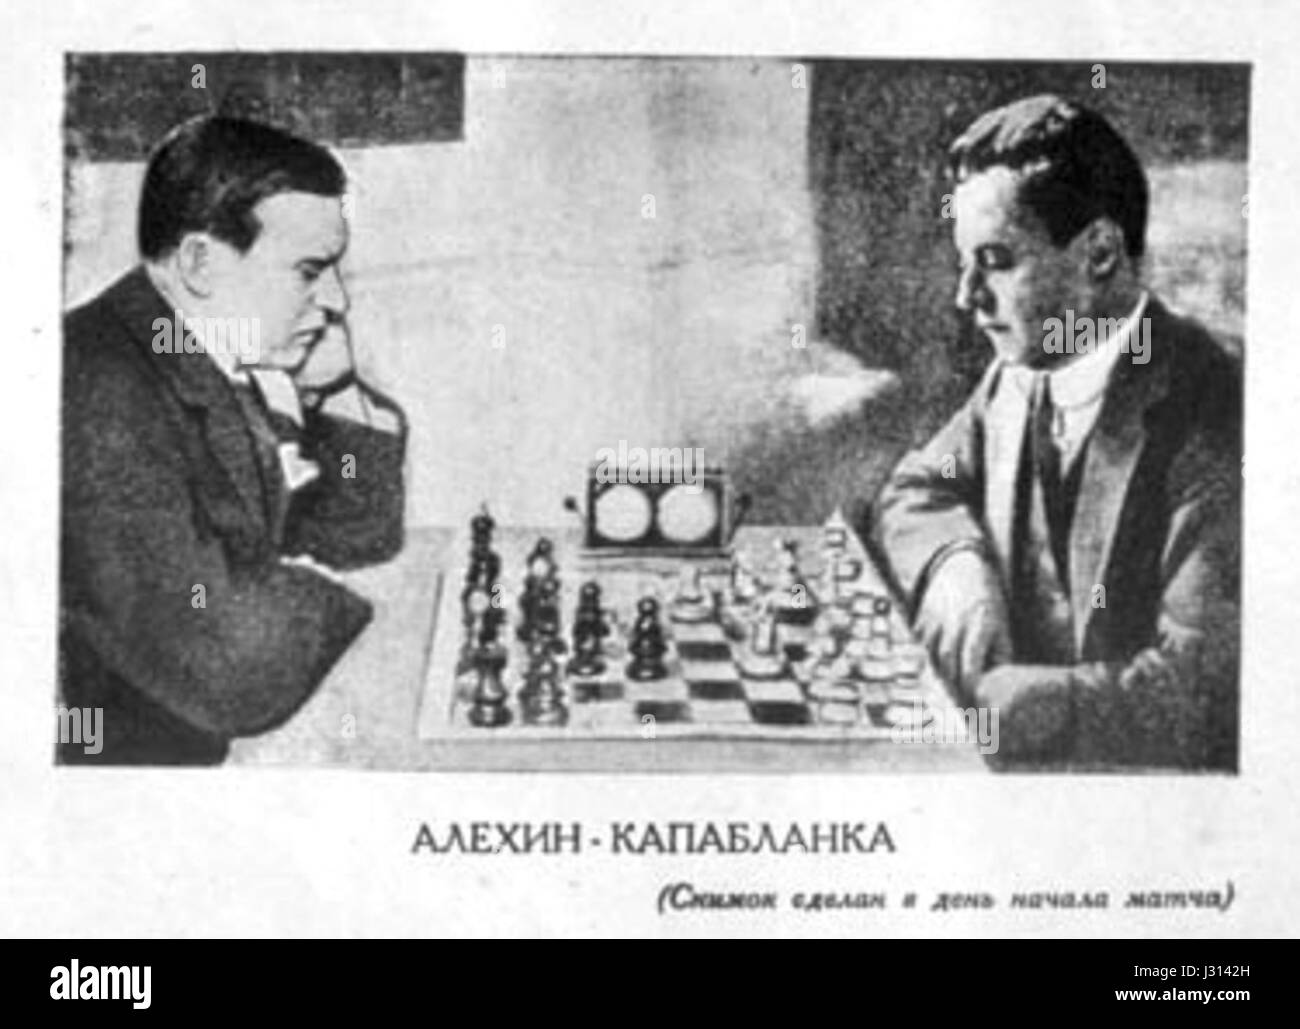 El encuentro por el título mundial Capablanca vs Alekhine 1927: Argentina  hacia las ligas mayores 1925 - 1927 tomo 1